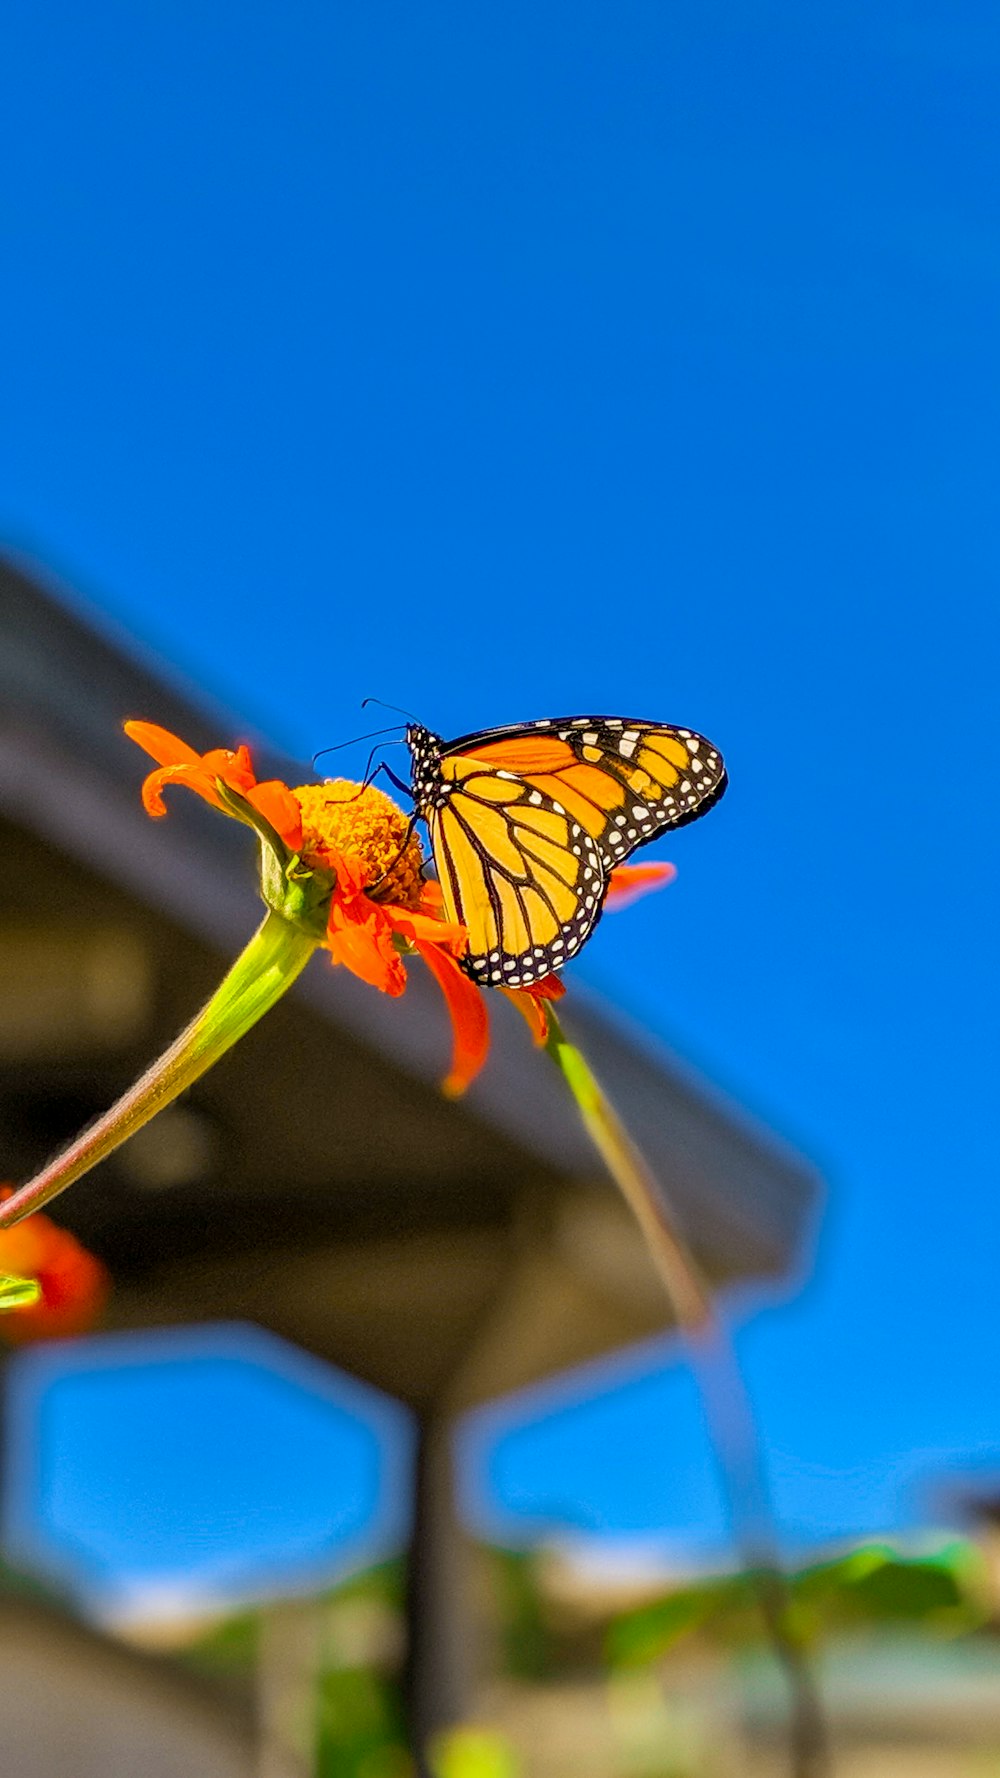 Monarchfalter sitzt tagsüber auf orangefarbener Blume in Nahaufnahme